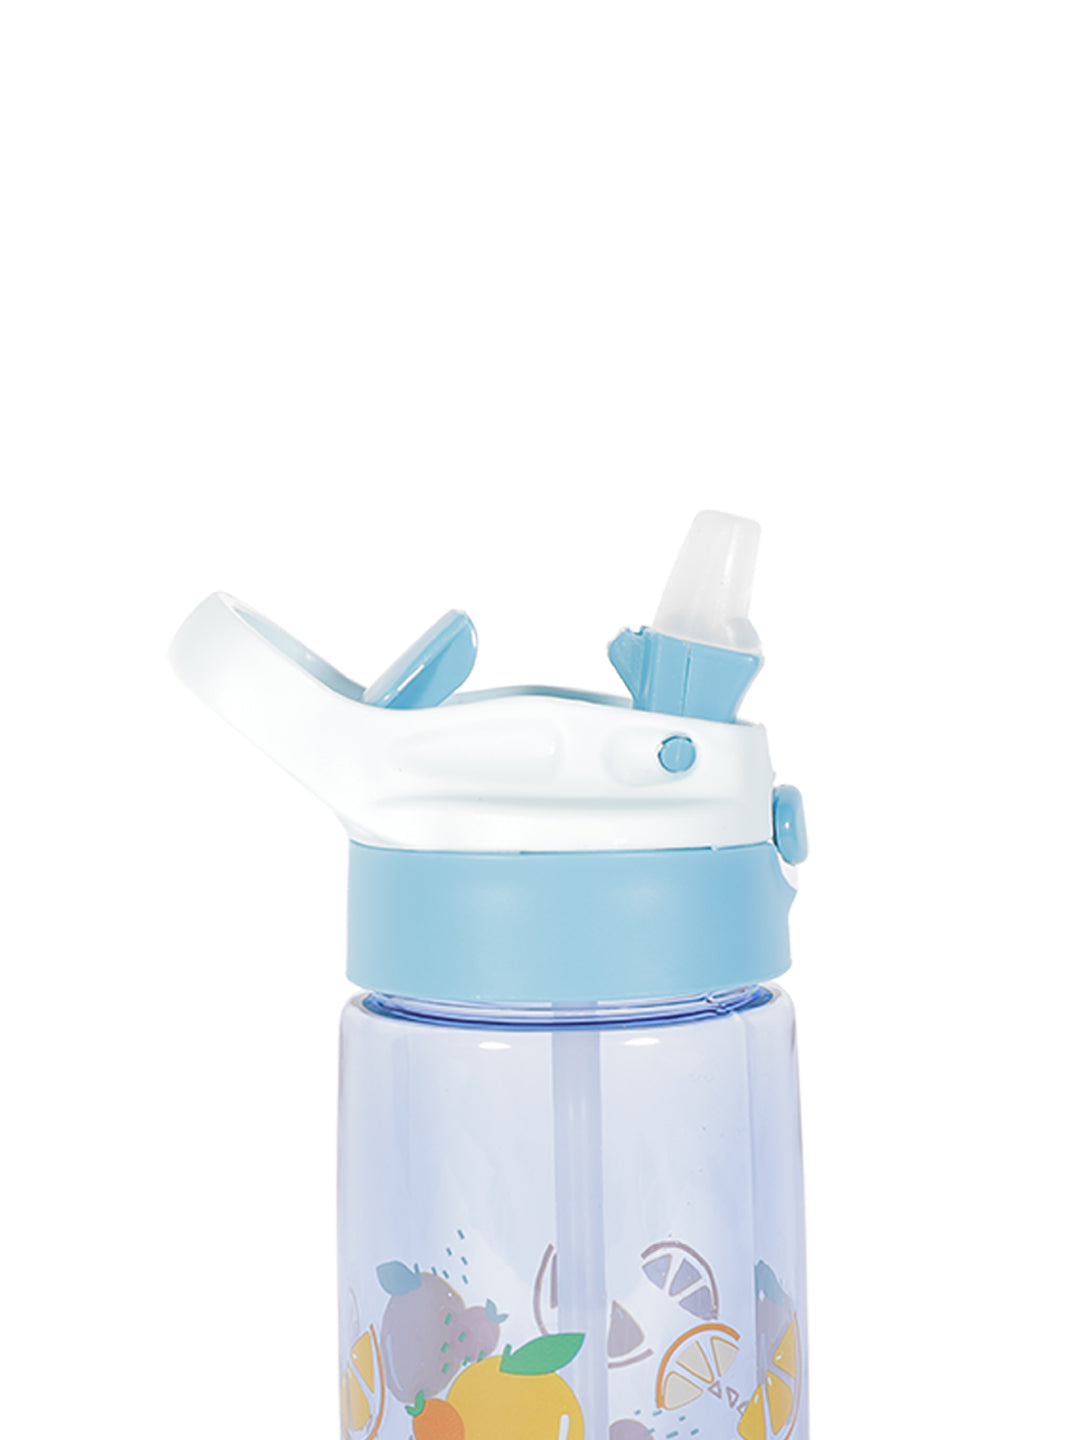 VON CASA Sipper Water Bottle - Skyblue, 480Ml